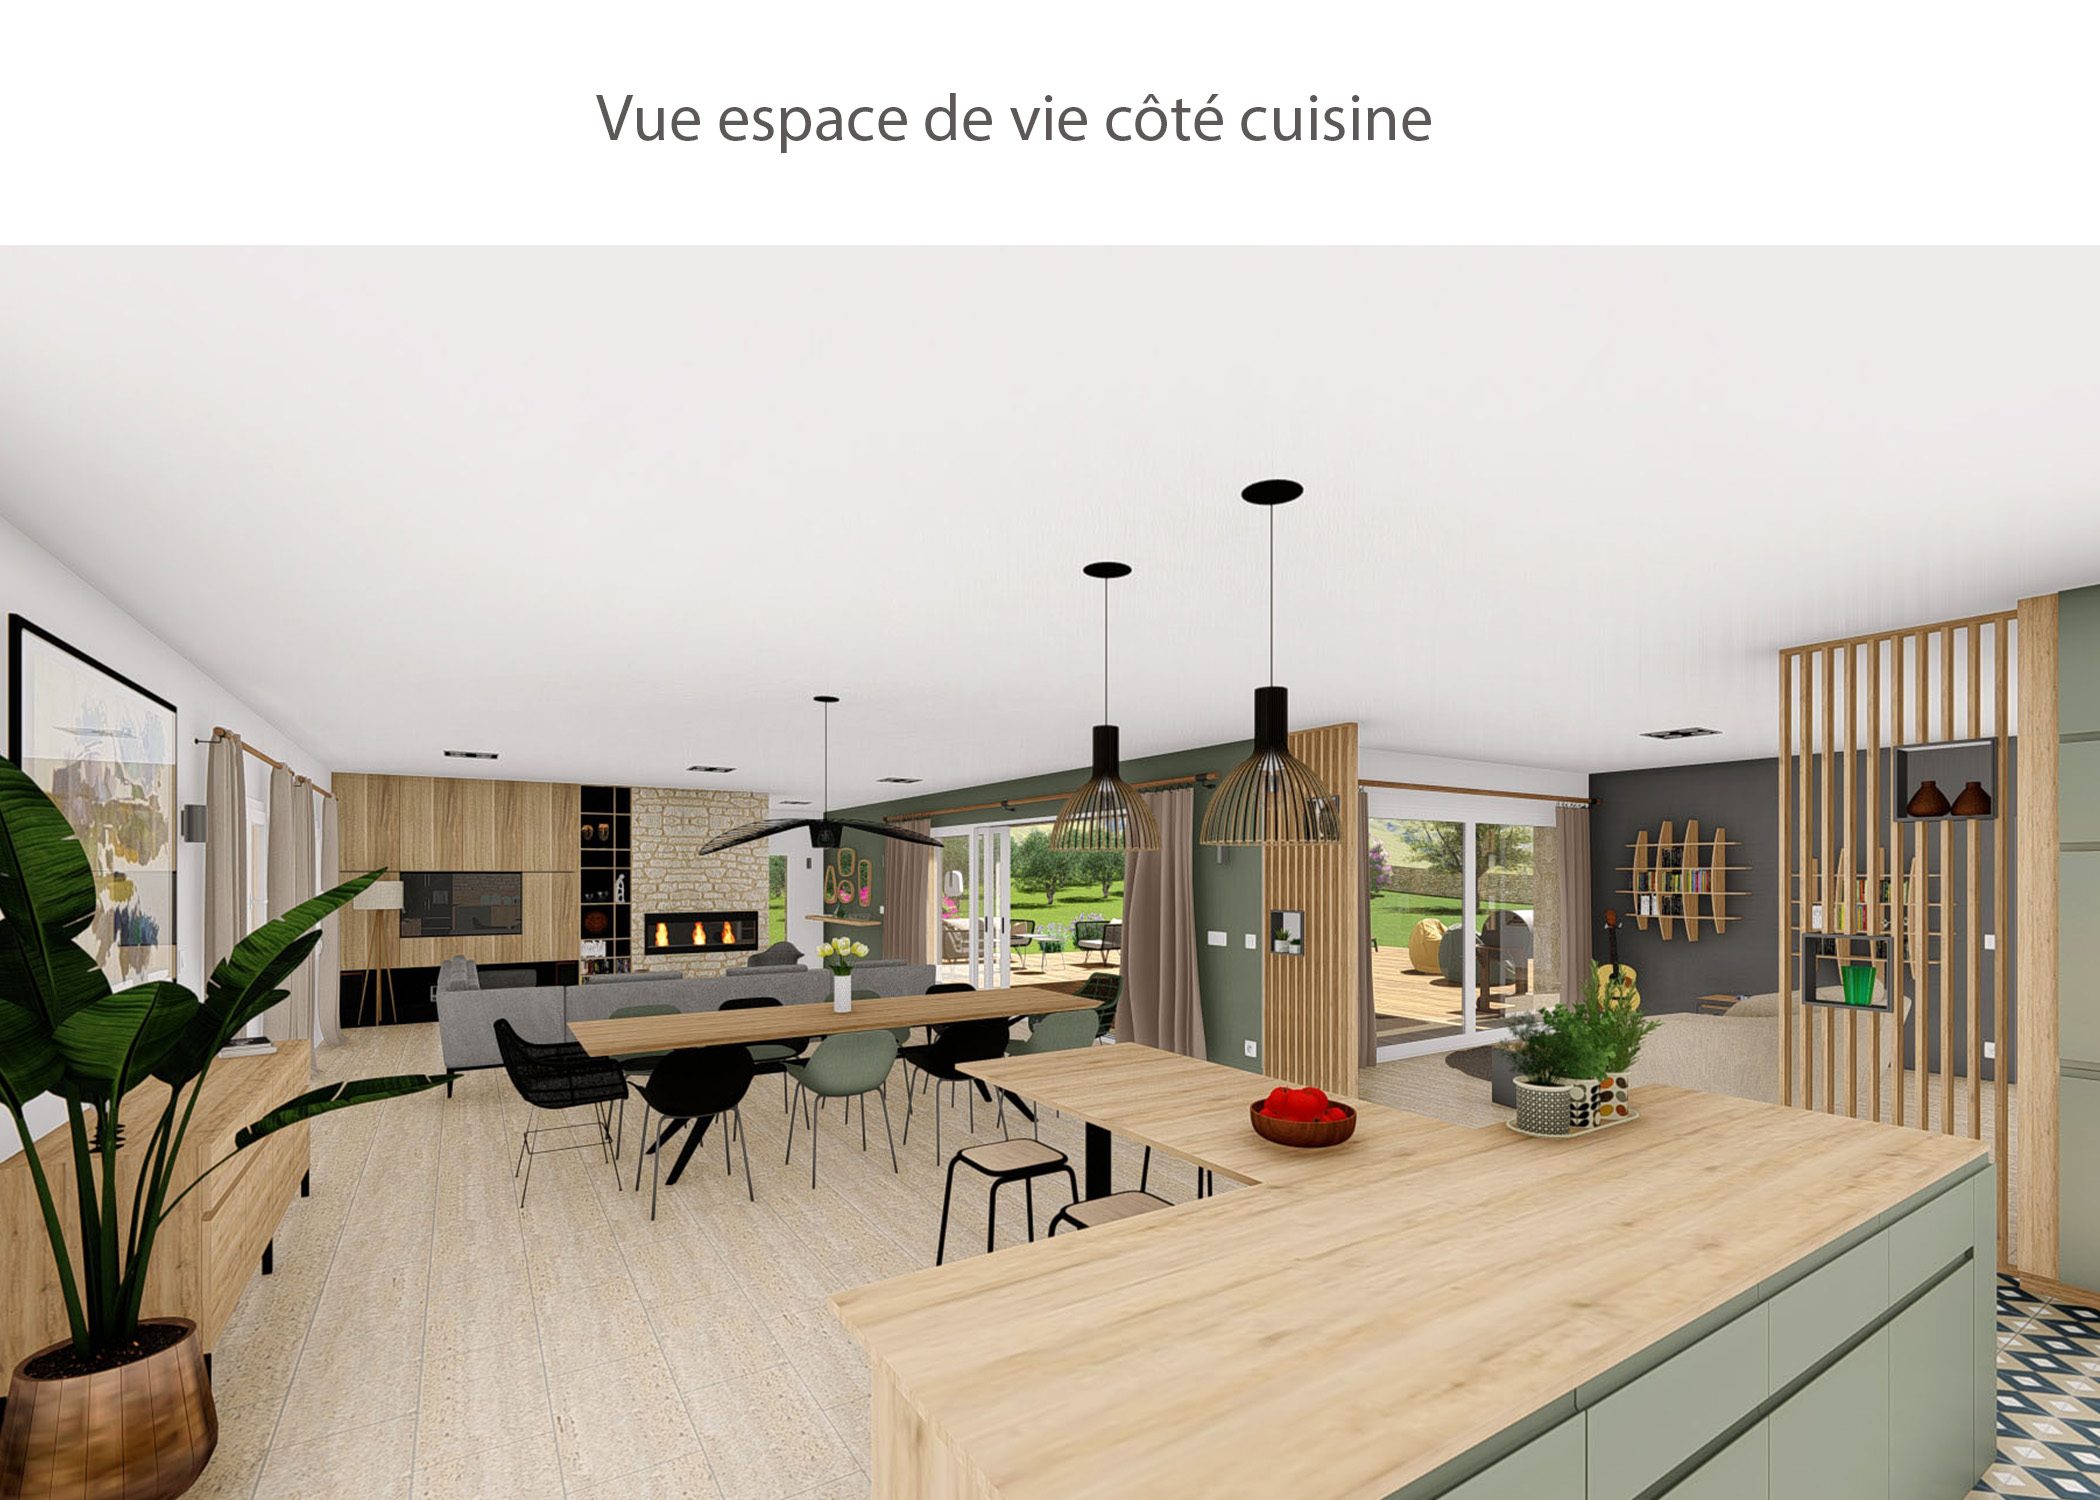 amenagement-decoration-maison de famille-campagne-provence-espace de vie cote cuisine-dekho design